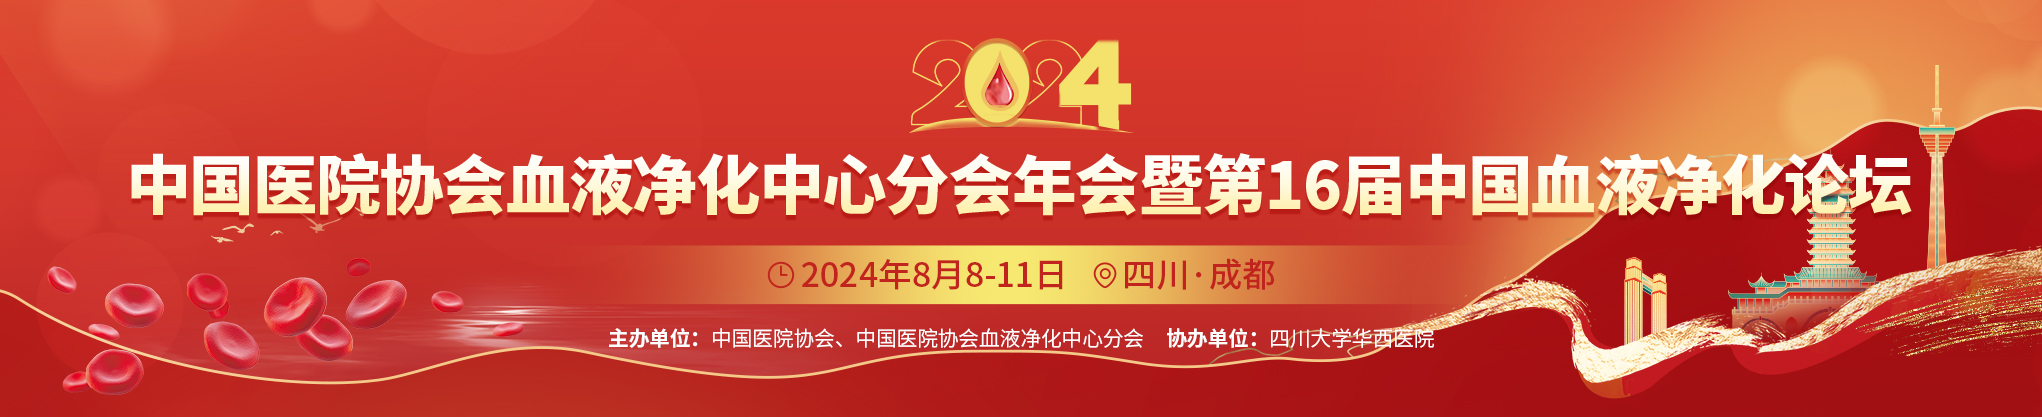 2024年中国医院协会血液净化中心分会年会暨第16届中国血液净化论坛